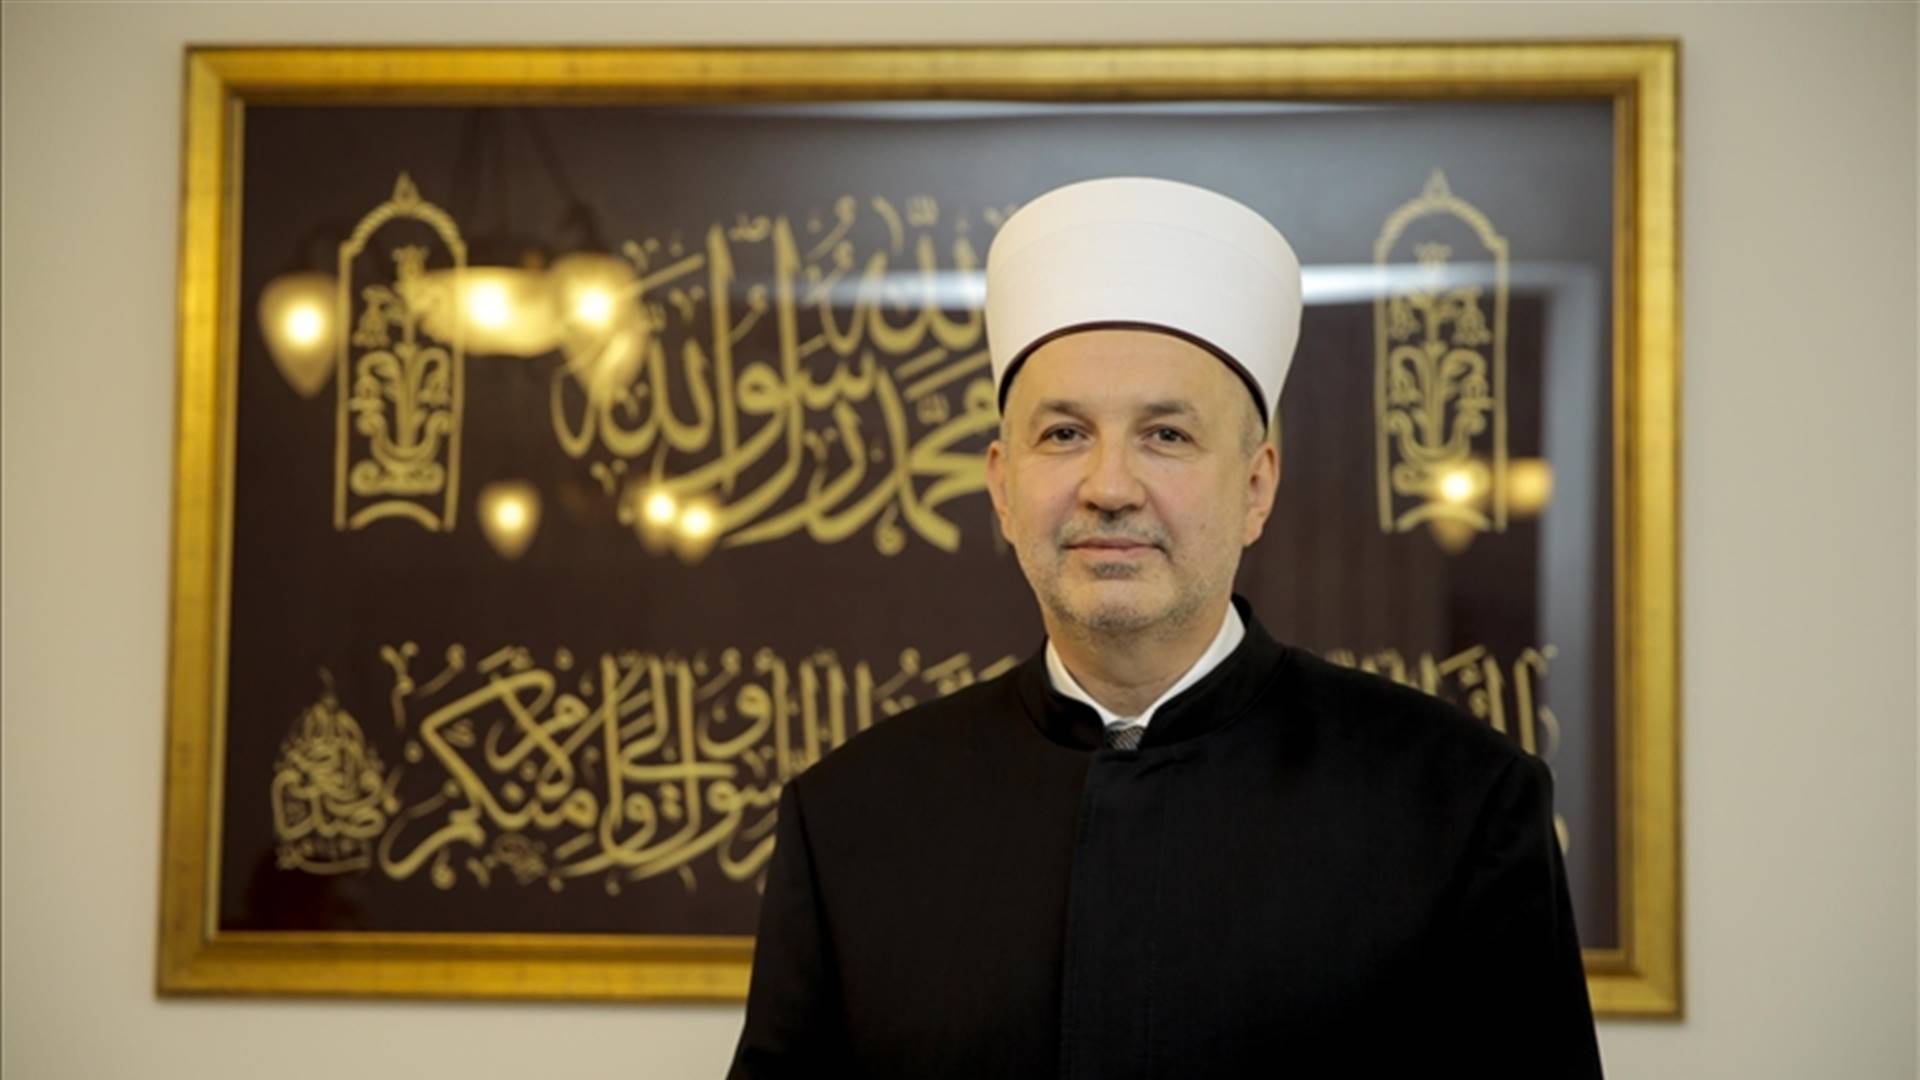 Sarajevski muftija Nedžad Grabus: Naša utakmica treba biti u tome ko će učiniti više dobra